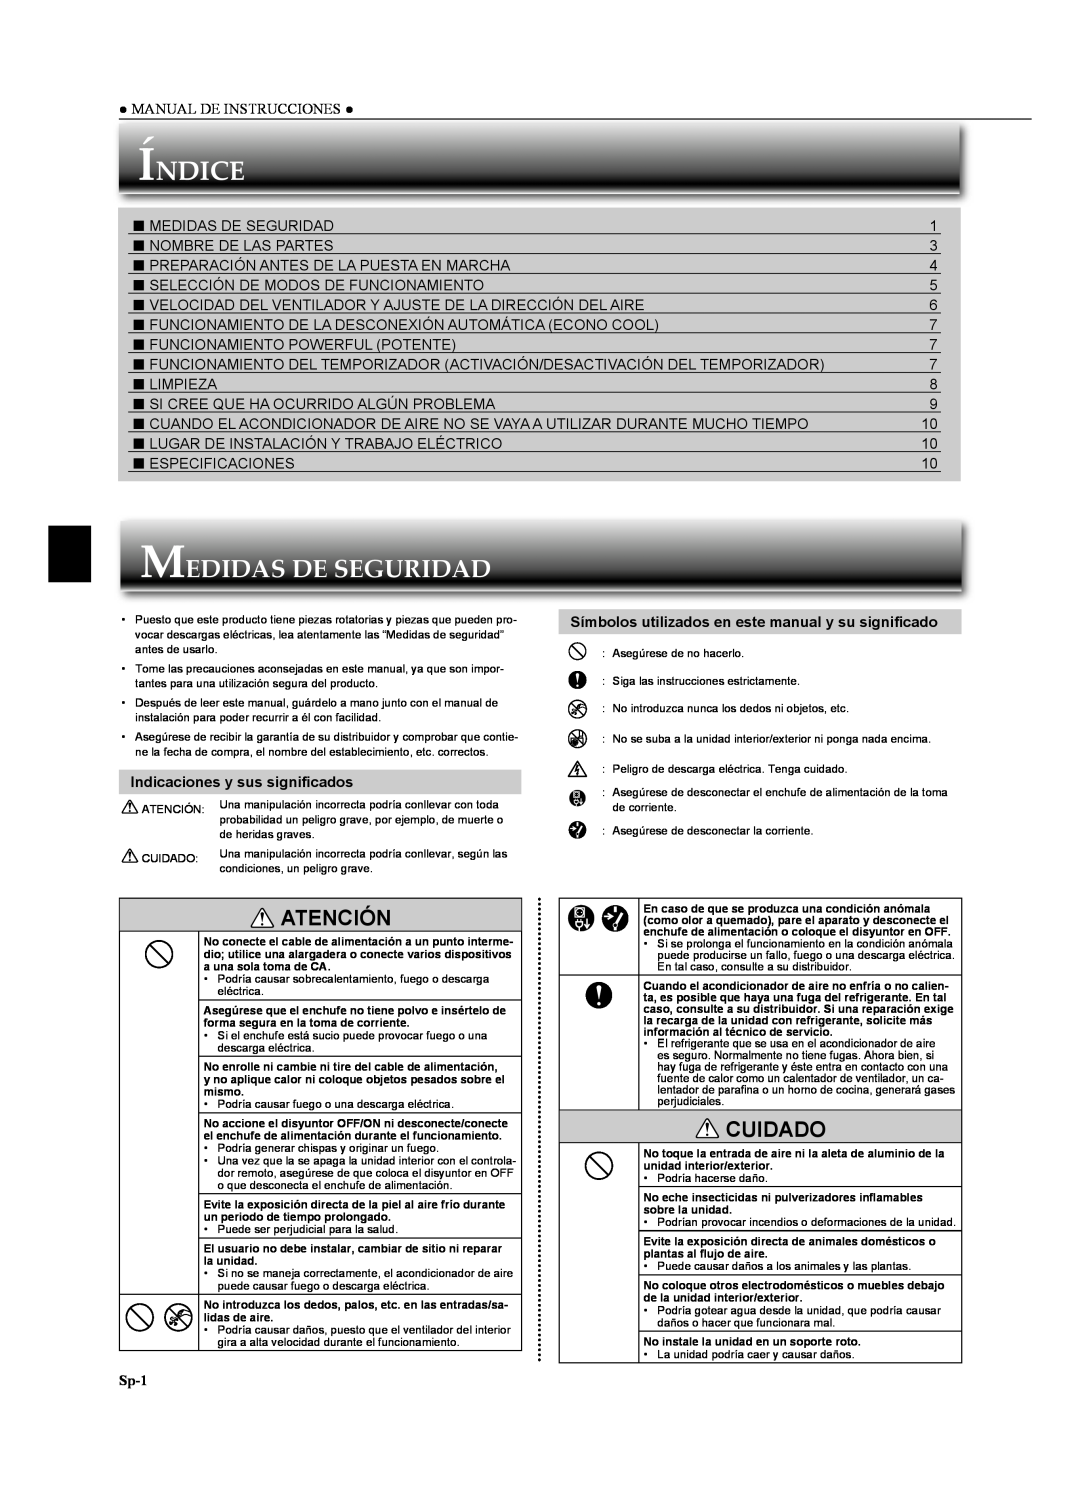 Mitsubishi Electronics MSZ-GA24NA Índice, Medidas De Seguridad, Atención, Cuidado, Indicaciones y sus signiﬁcados, Sp-1 